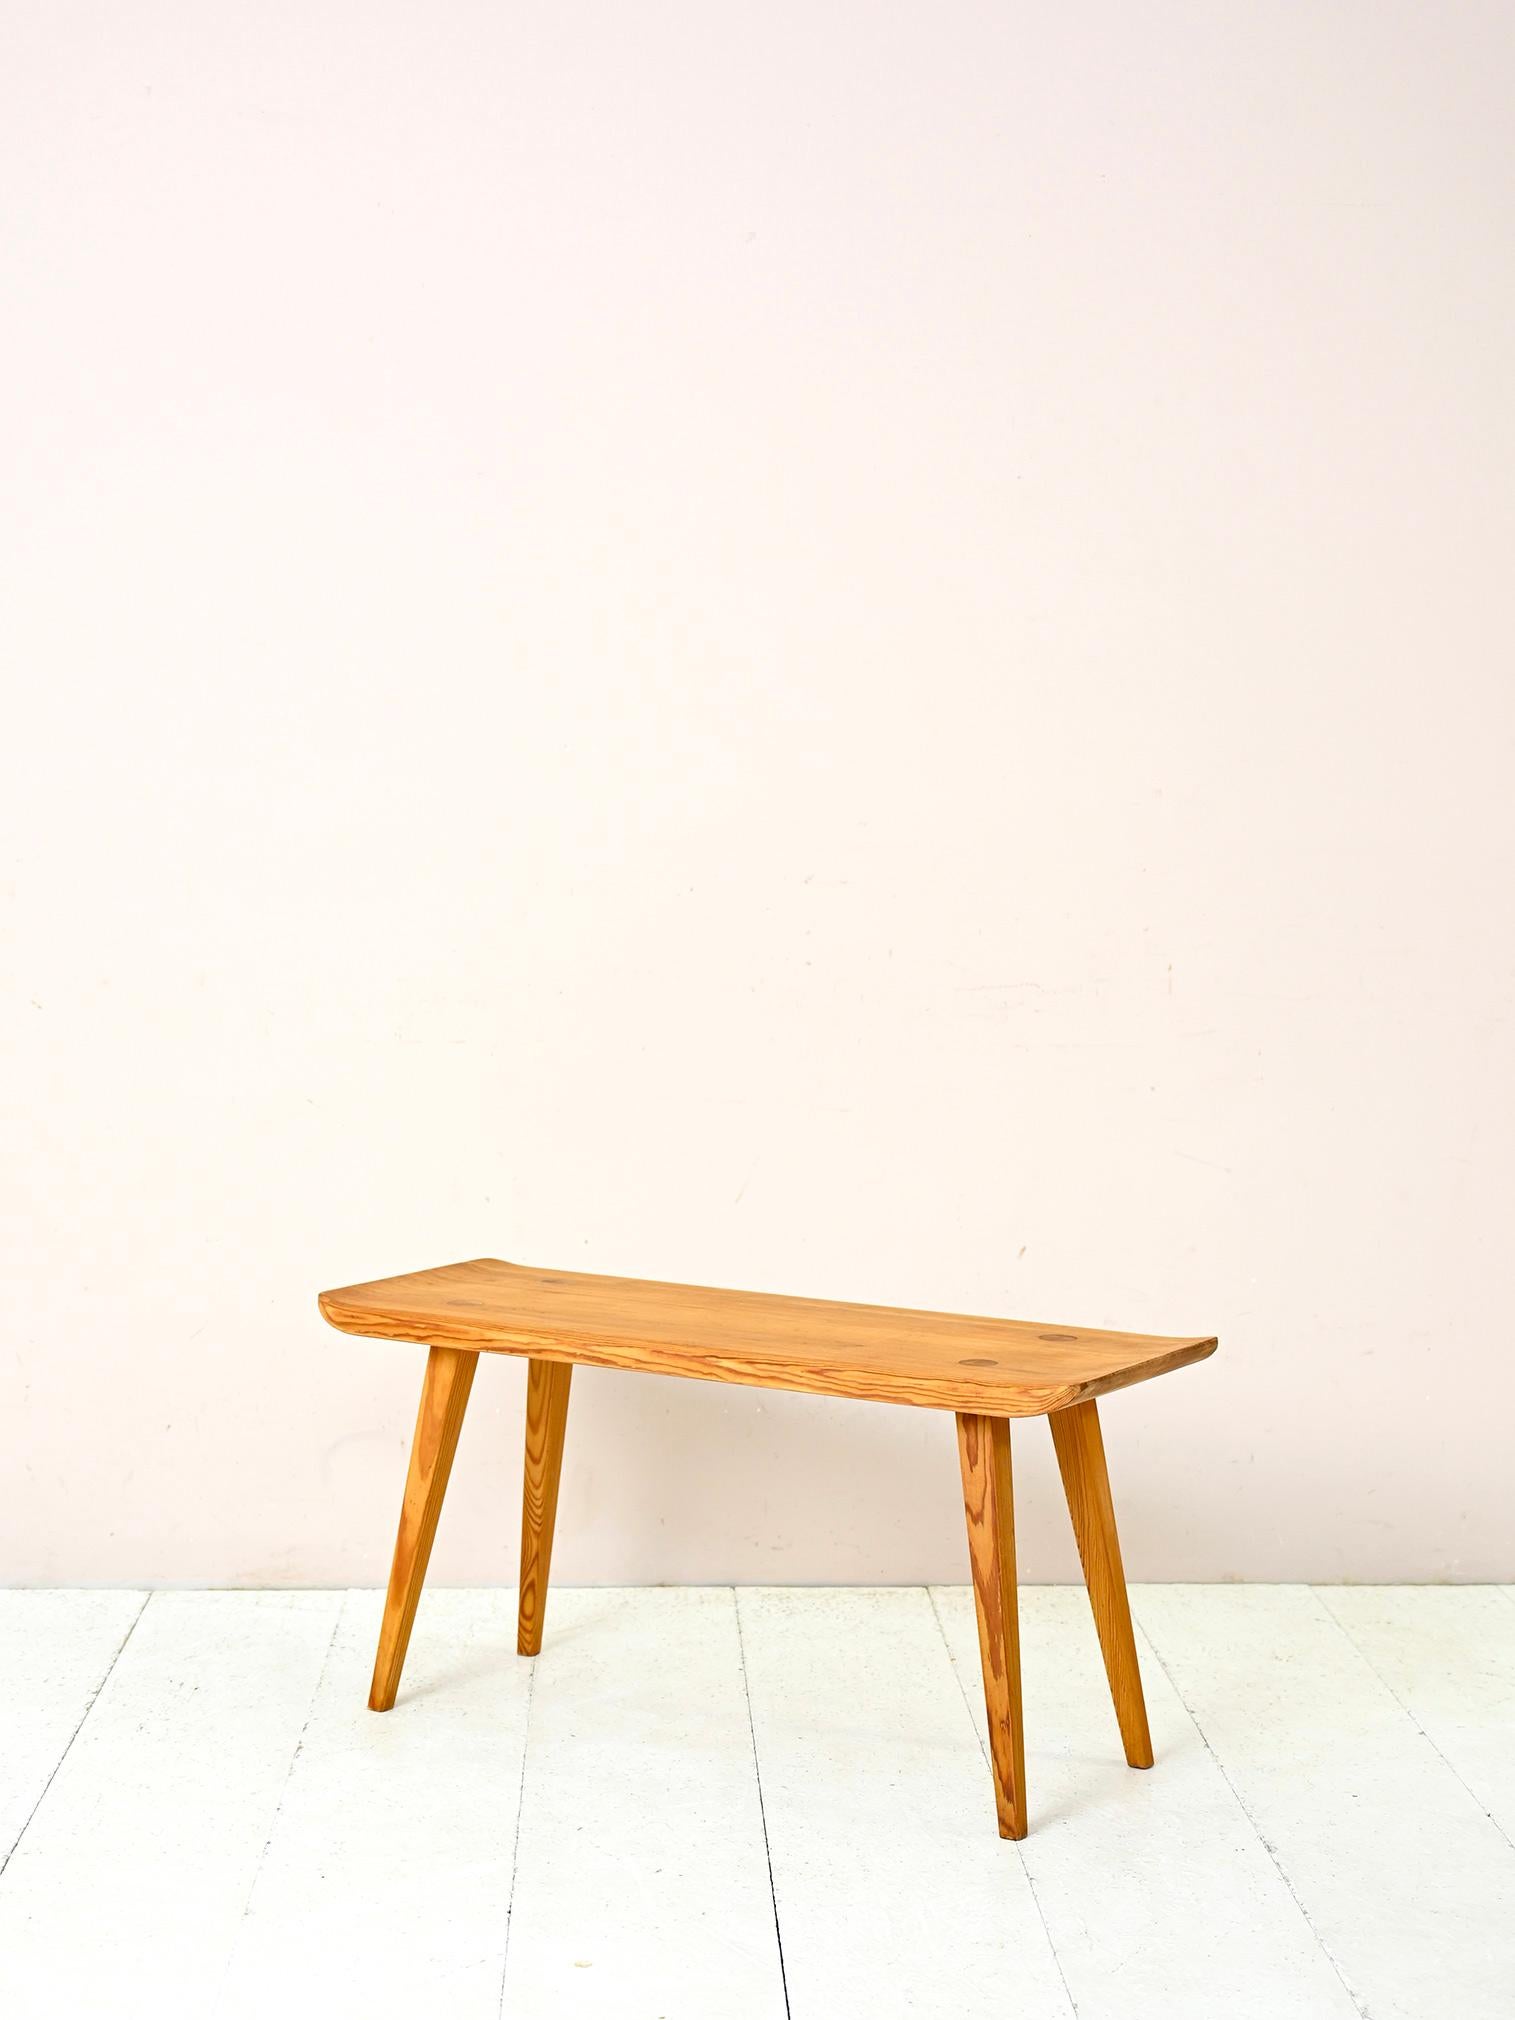 Original vintage Swedish solid wood bench.

Elegant 